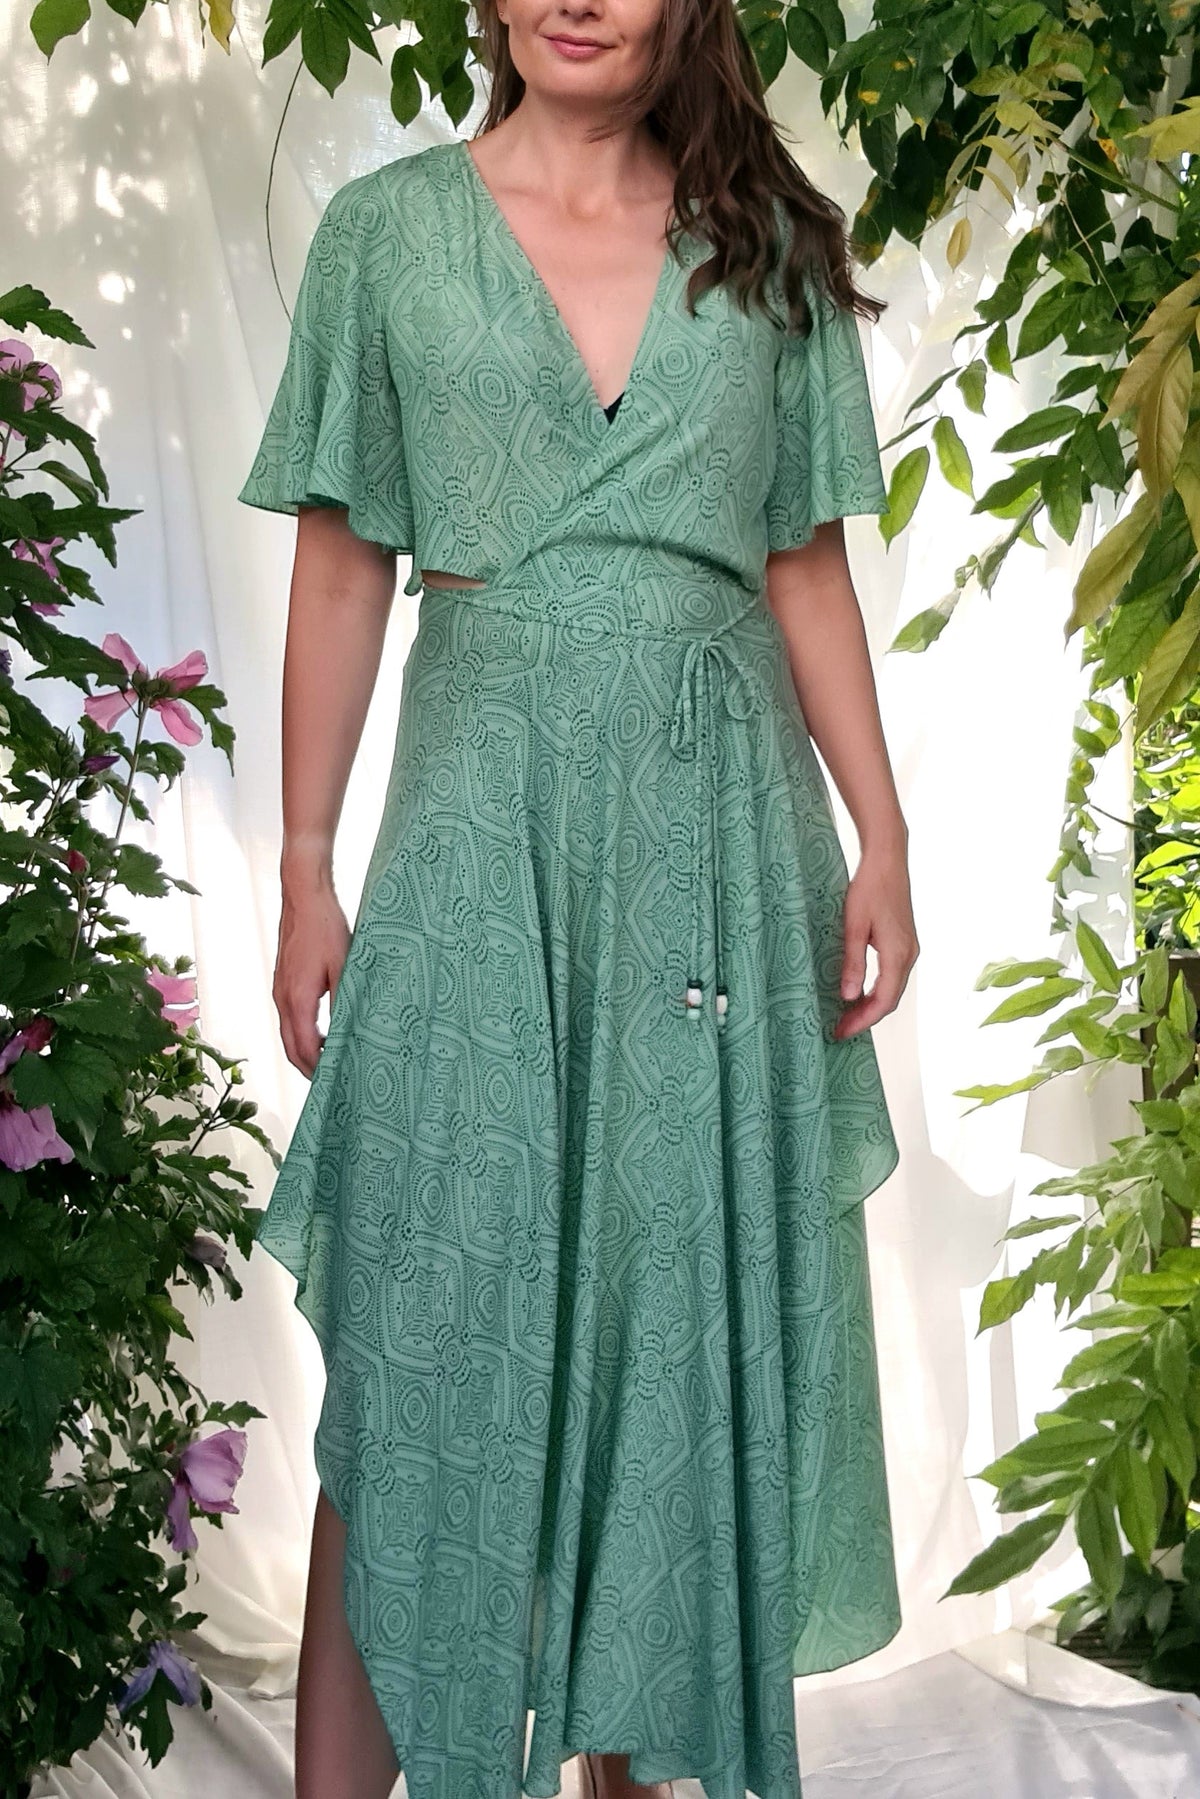 Lao Zwijgend arm Maje zomerse jurk maxi in mint groen